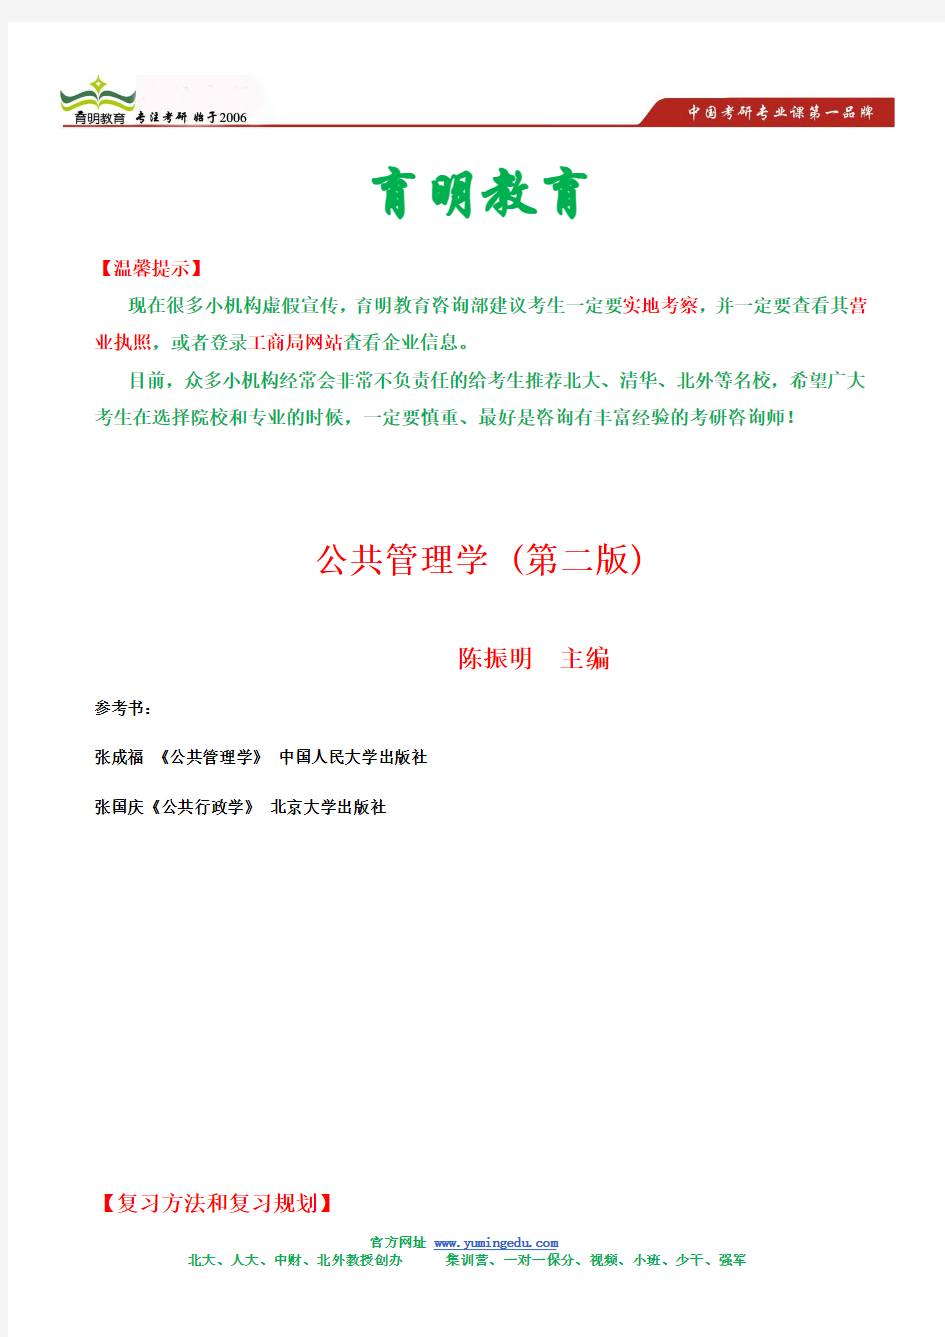 陈振明 公共管理学 考研笔记 背诵版